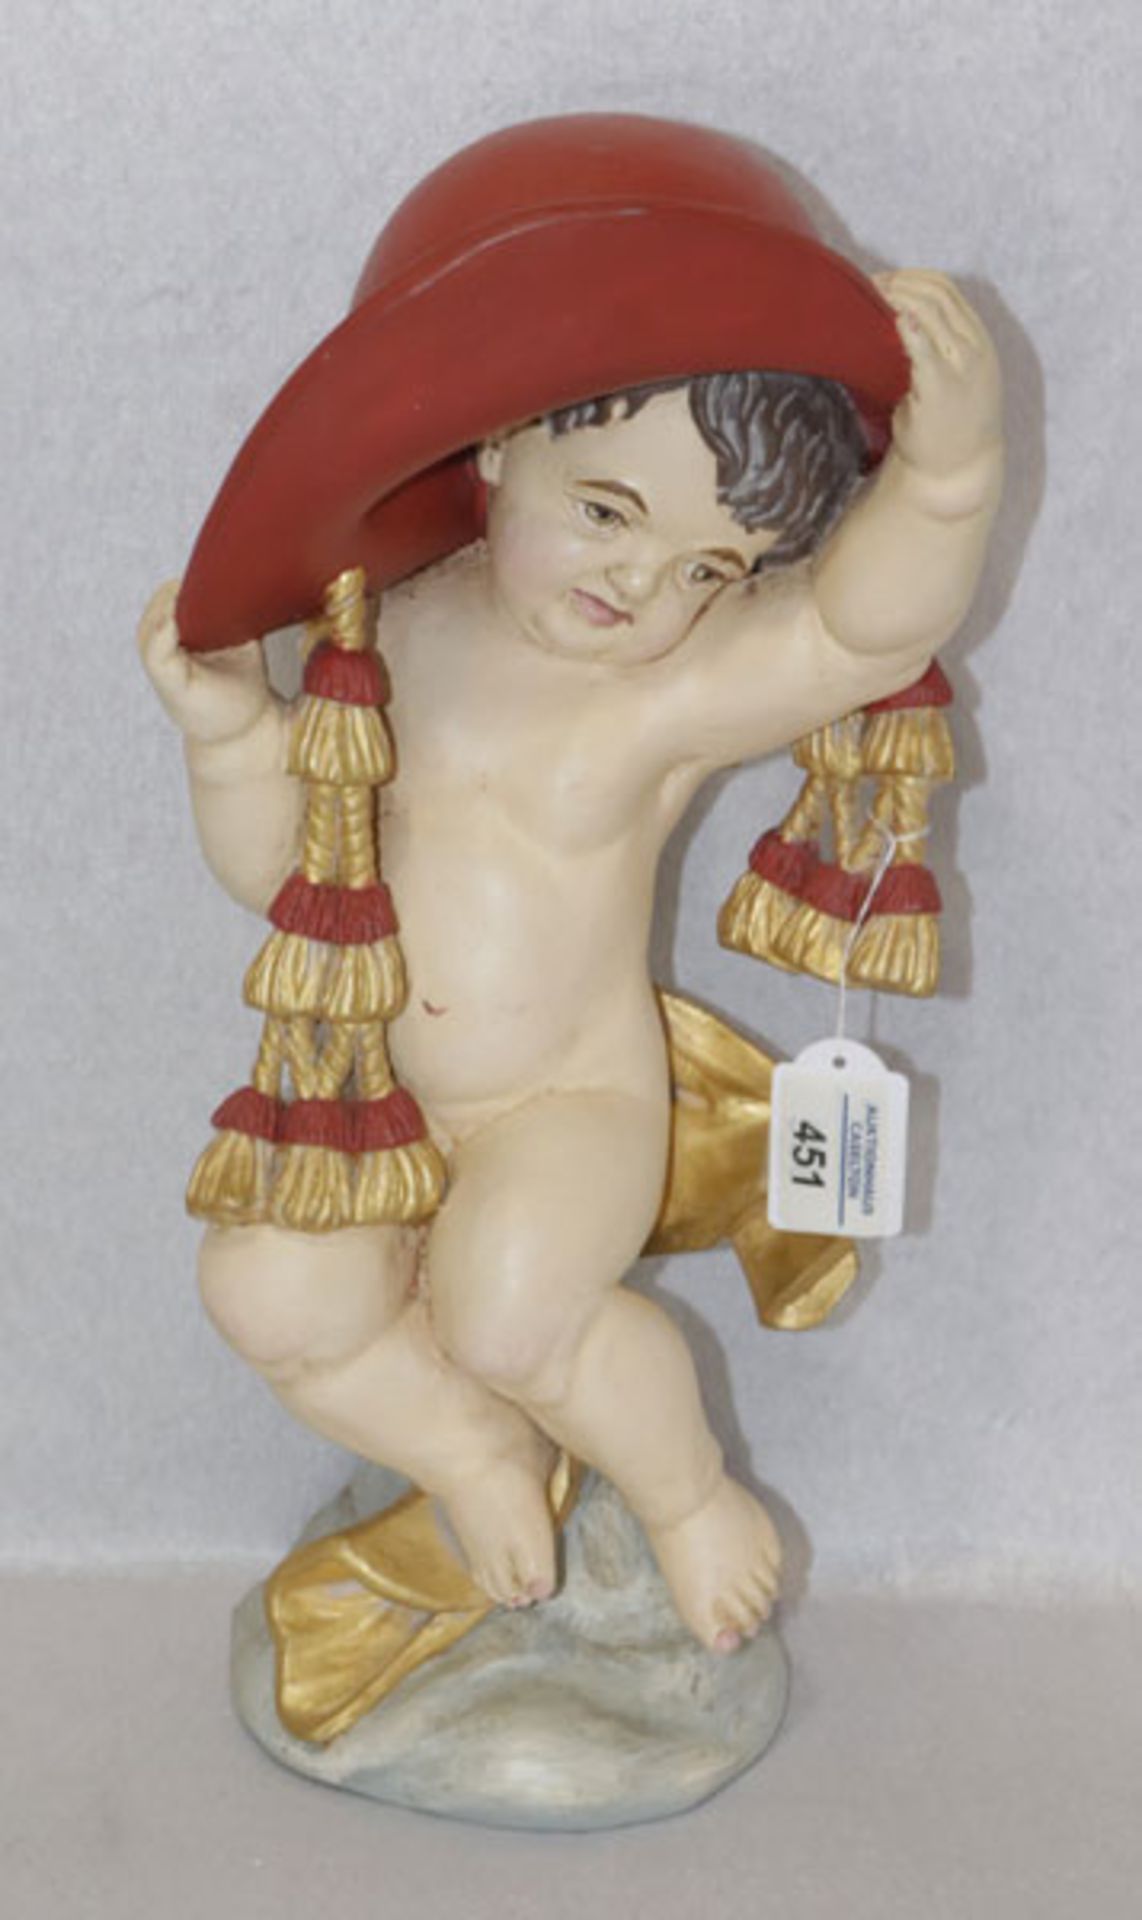 Holz Figurenskulptur 'Engel mit Kardinalshut', farbig gefaßt, H 39 cm, B 22 cm, T 15 cm, leicht best